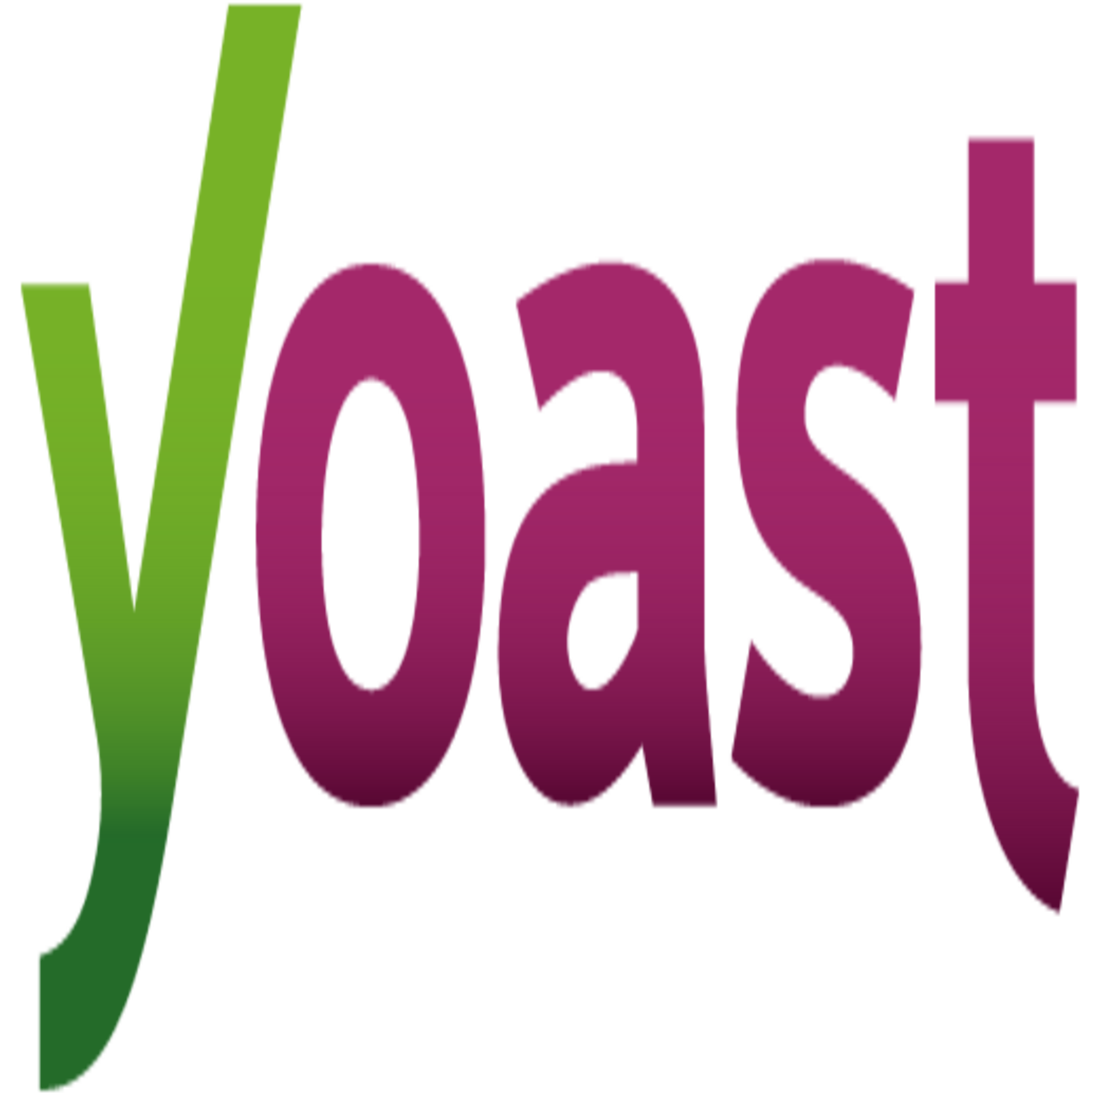 Yoast SEO-Optimierer-Logo